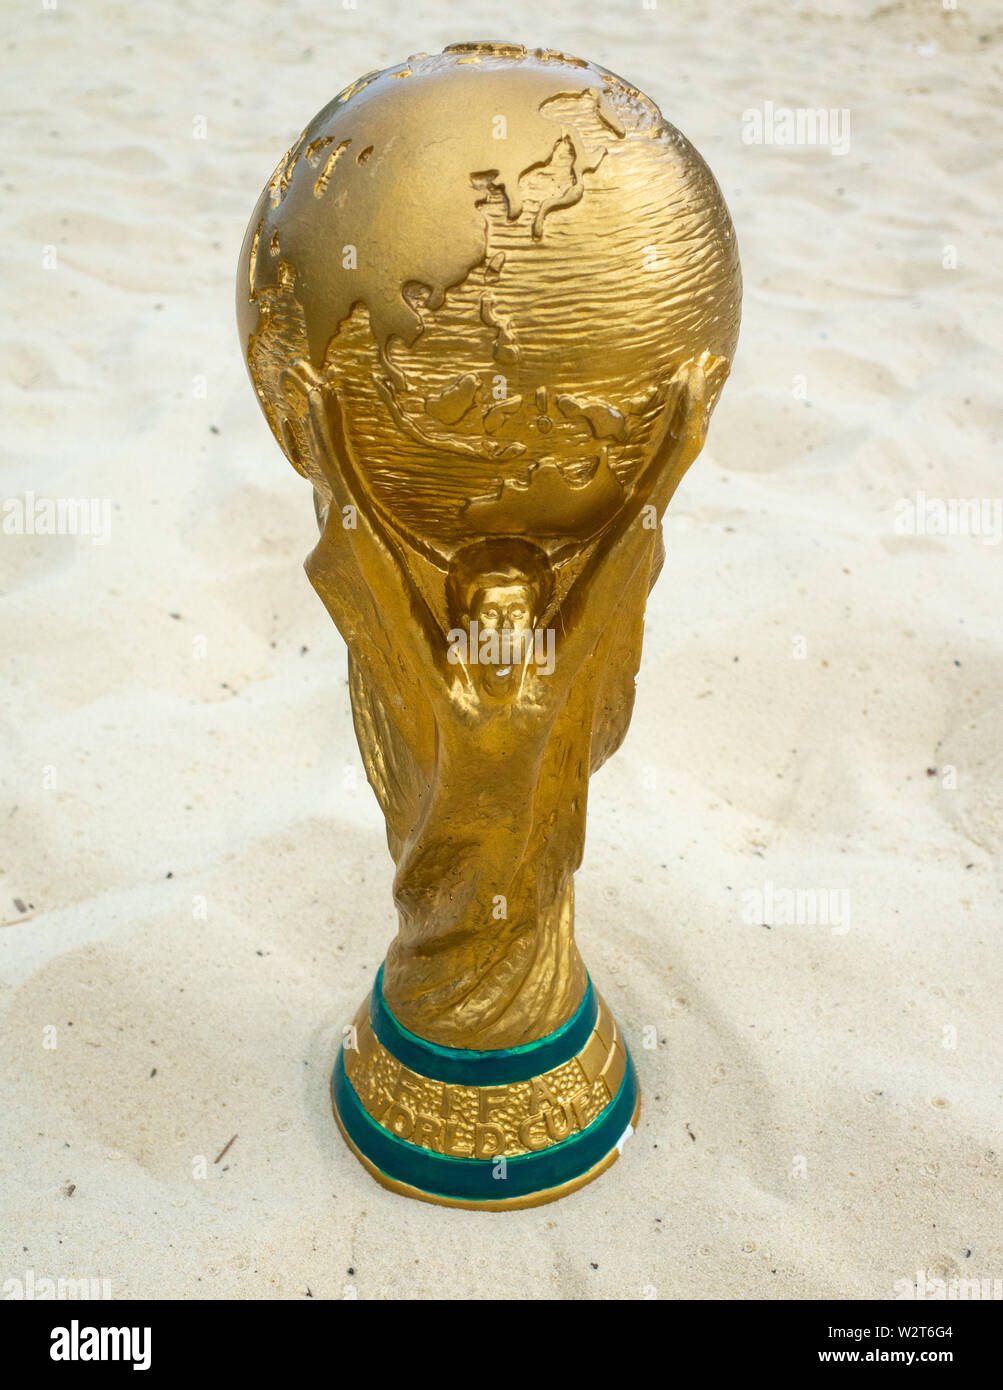 May 30 2019 Doha Qatar Fifa World Cup Trophy On Sand Fifa World